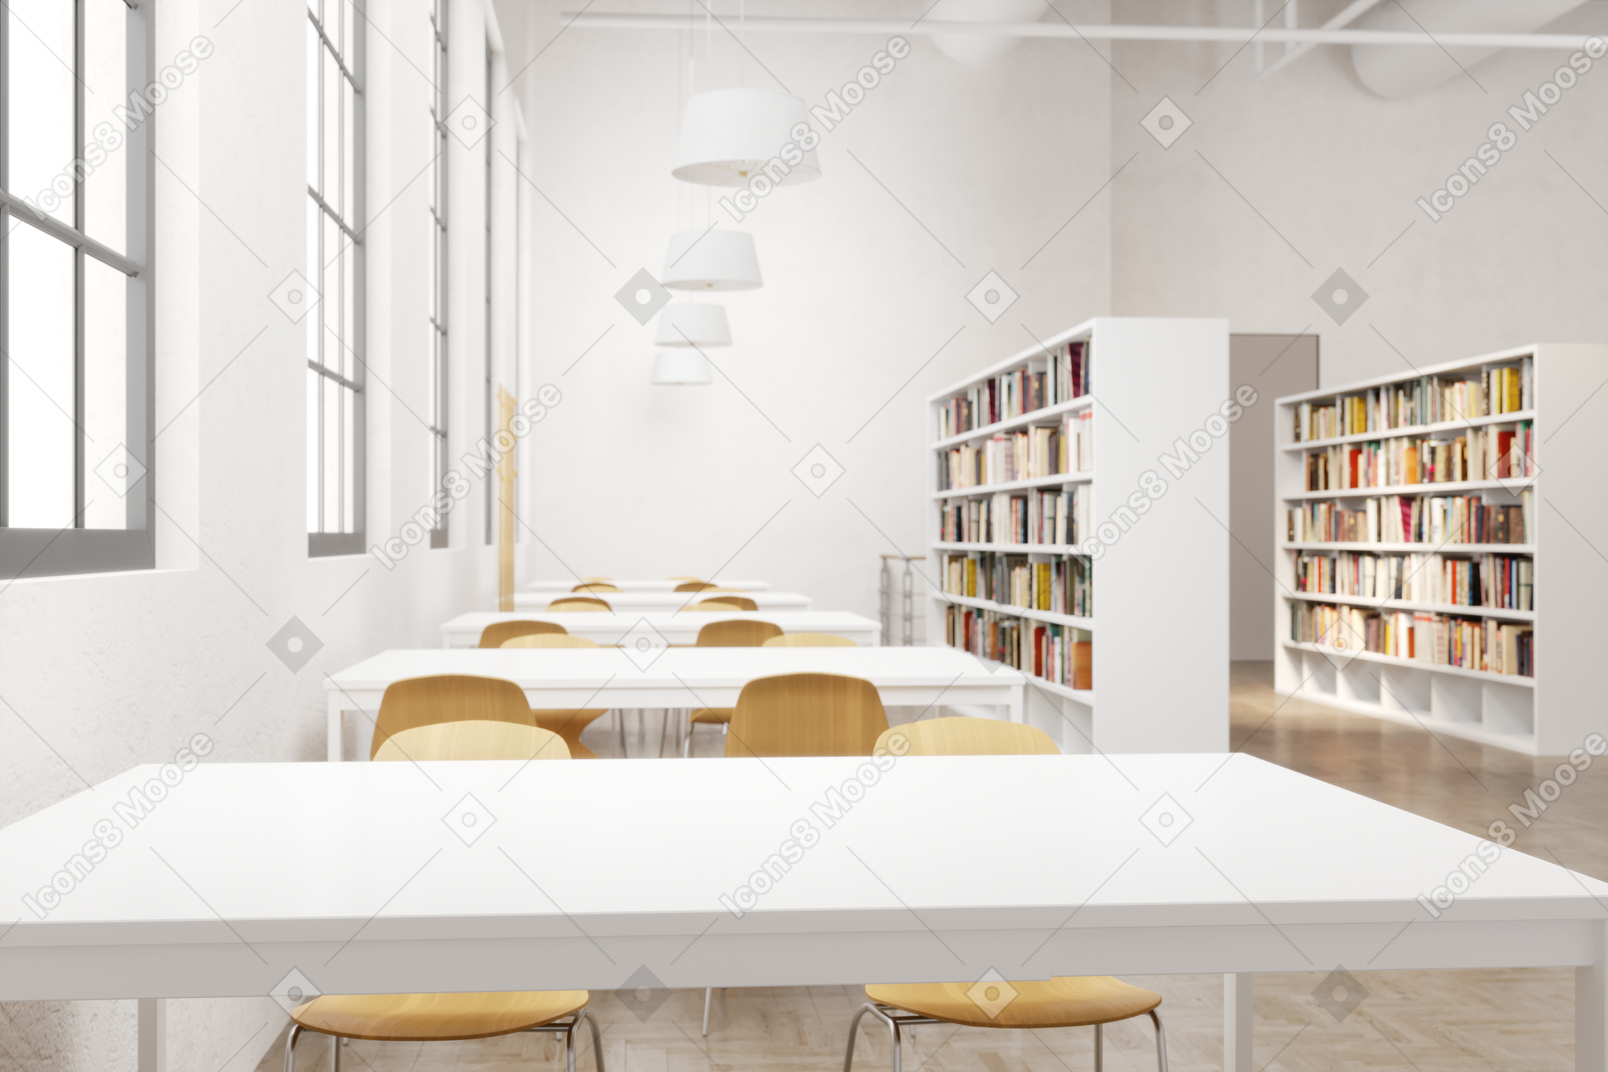 Biblioteca moderna com mesas e cadeiras